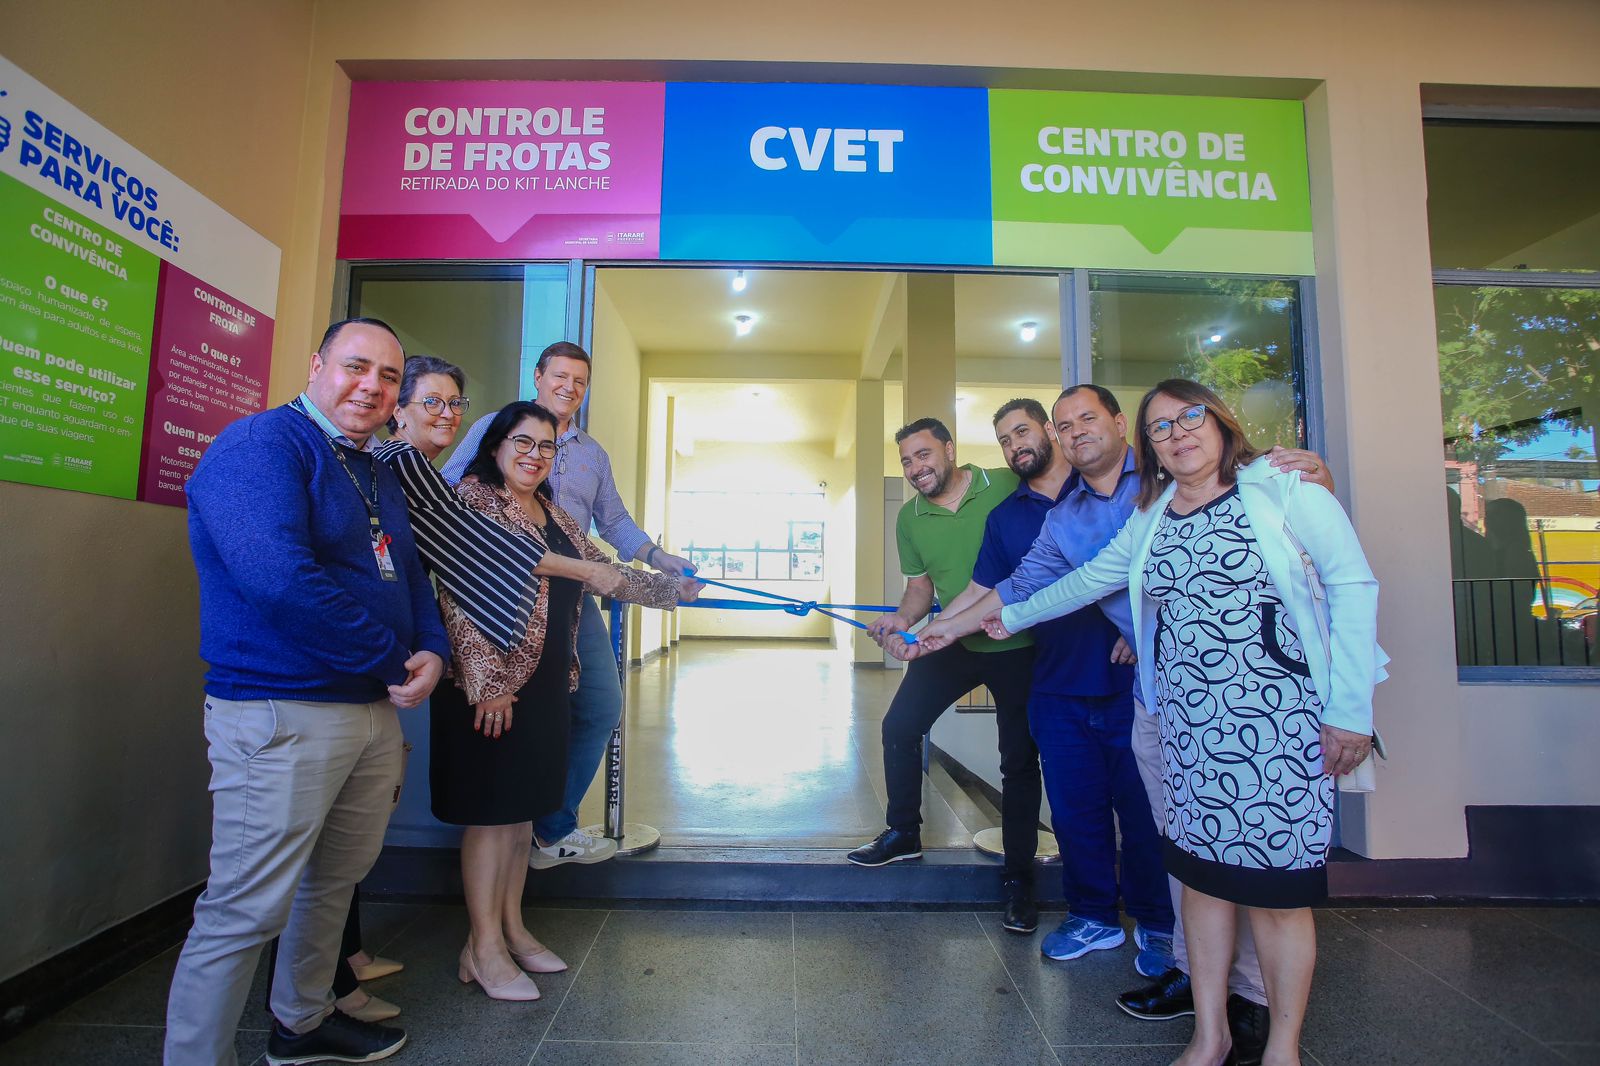 Prefeito de Itararé (SP), Heliton do Valle, inaugura Centro de Convivência da Saúde e anuncia distribuição gratuita de Kit Lanche